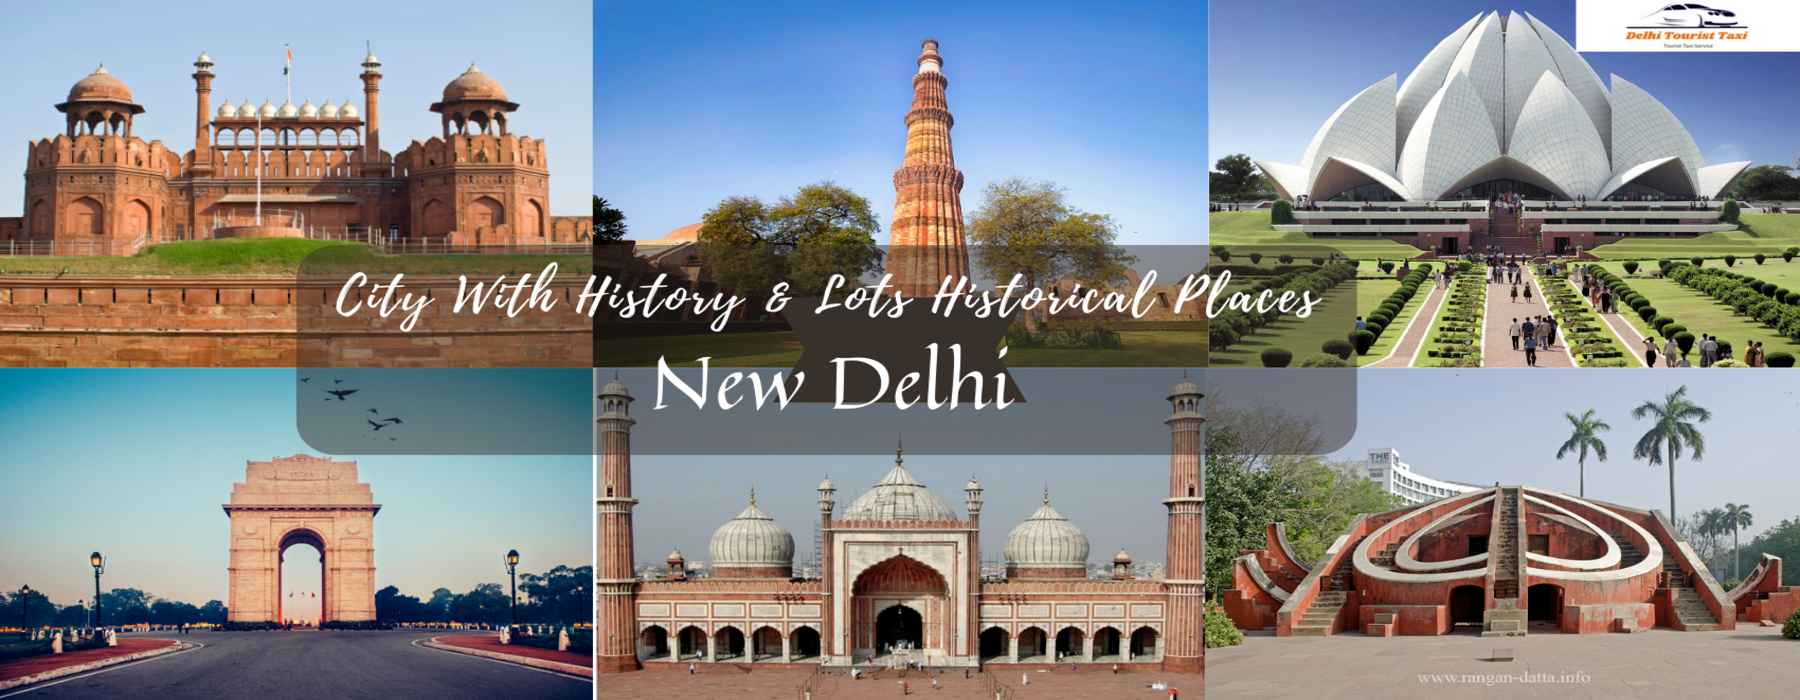 new_delhi_tourist_place